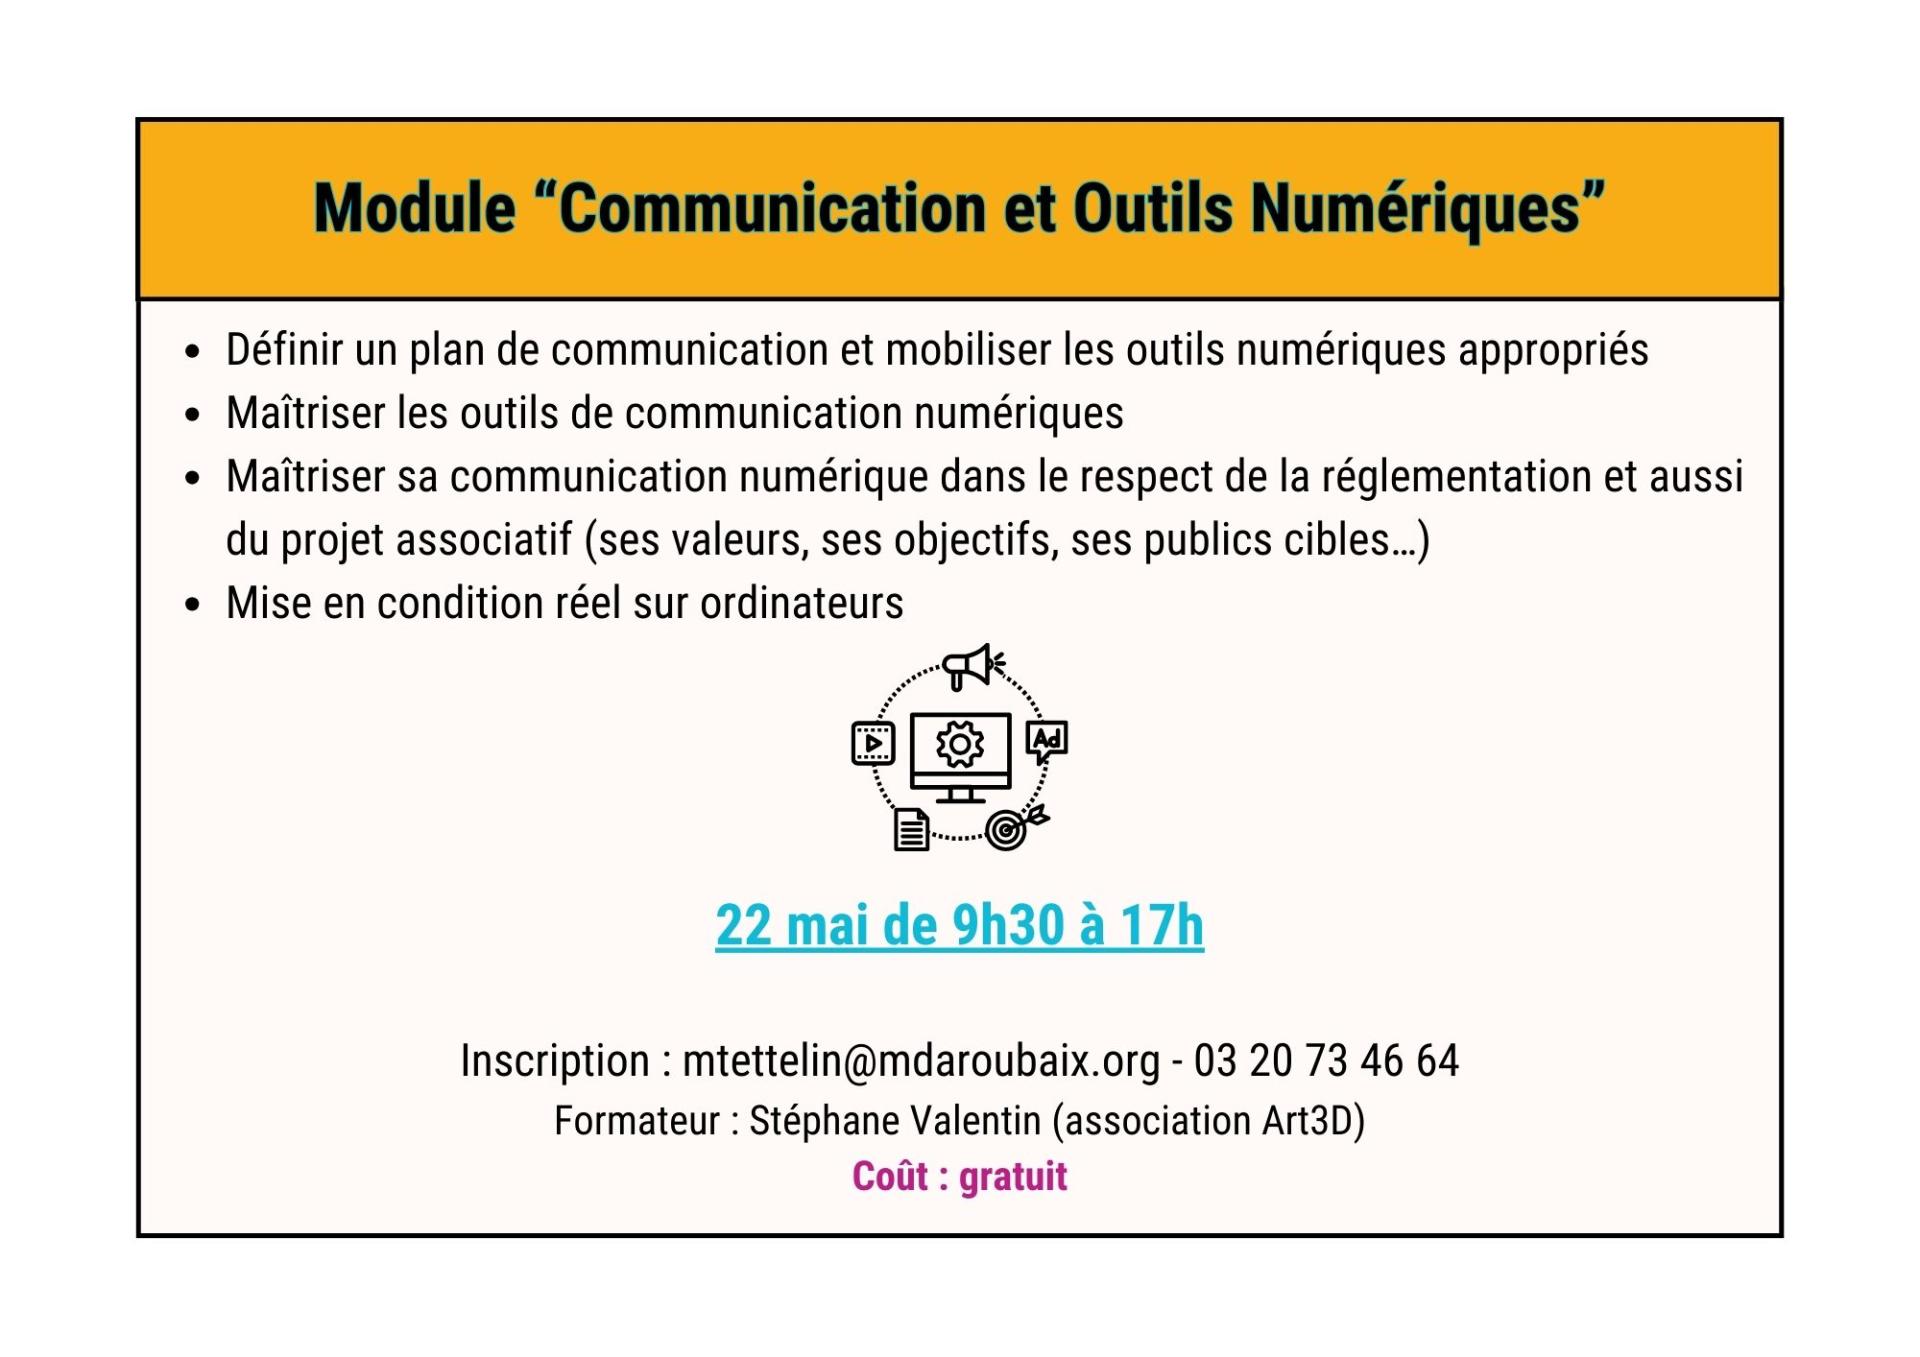 Module communication et outils numeriques